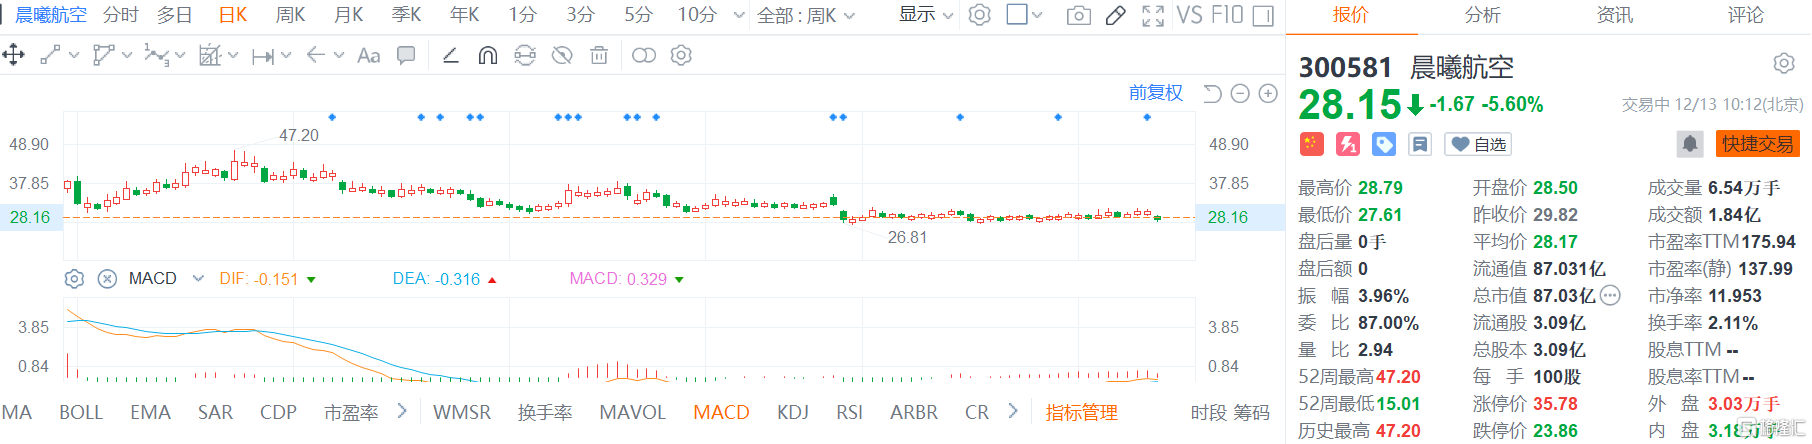 晨曦航空(300581.SZ)股价弱势震荡，盘中最大跌幅逾7%